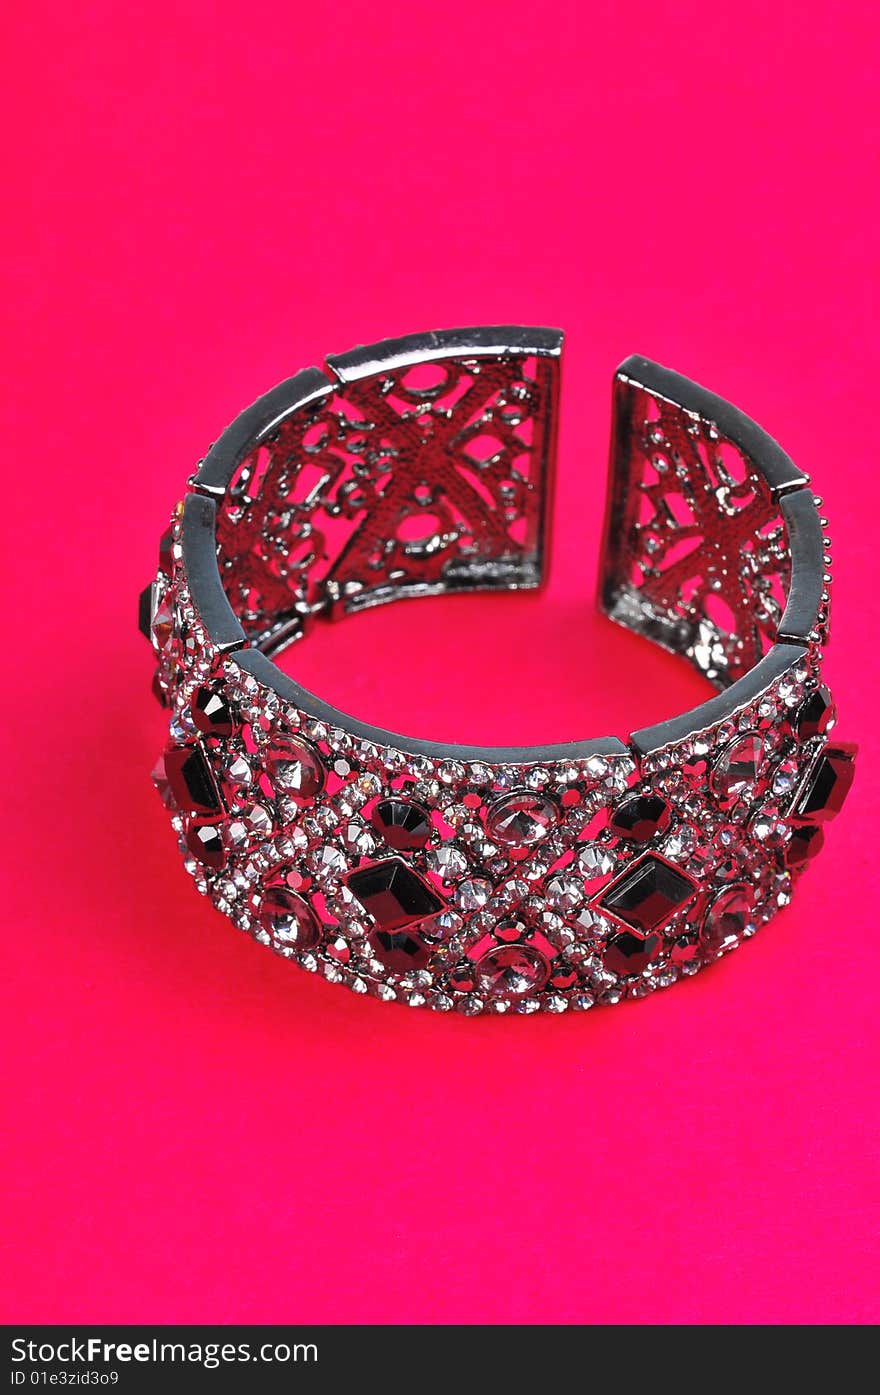 Bracelet isolated on pink background.